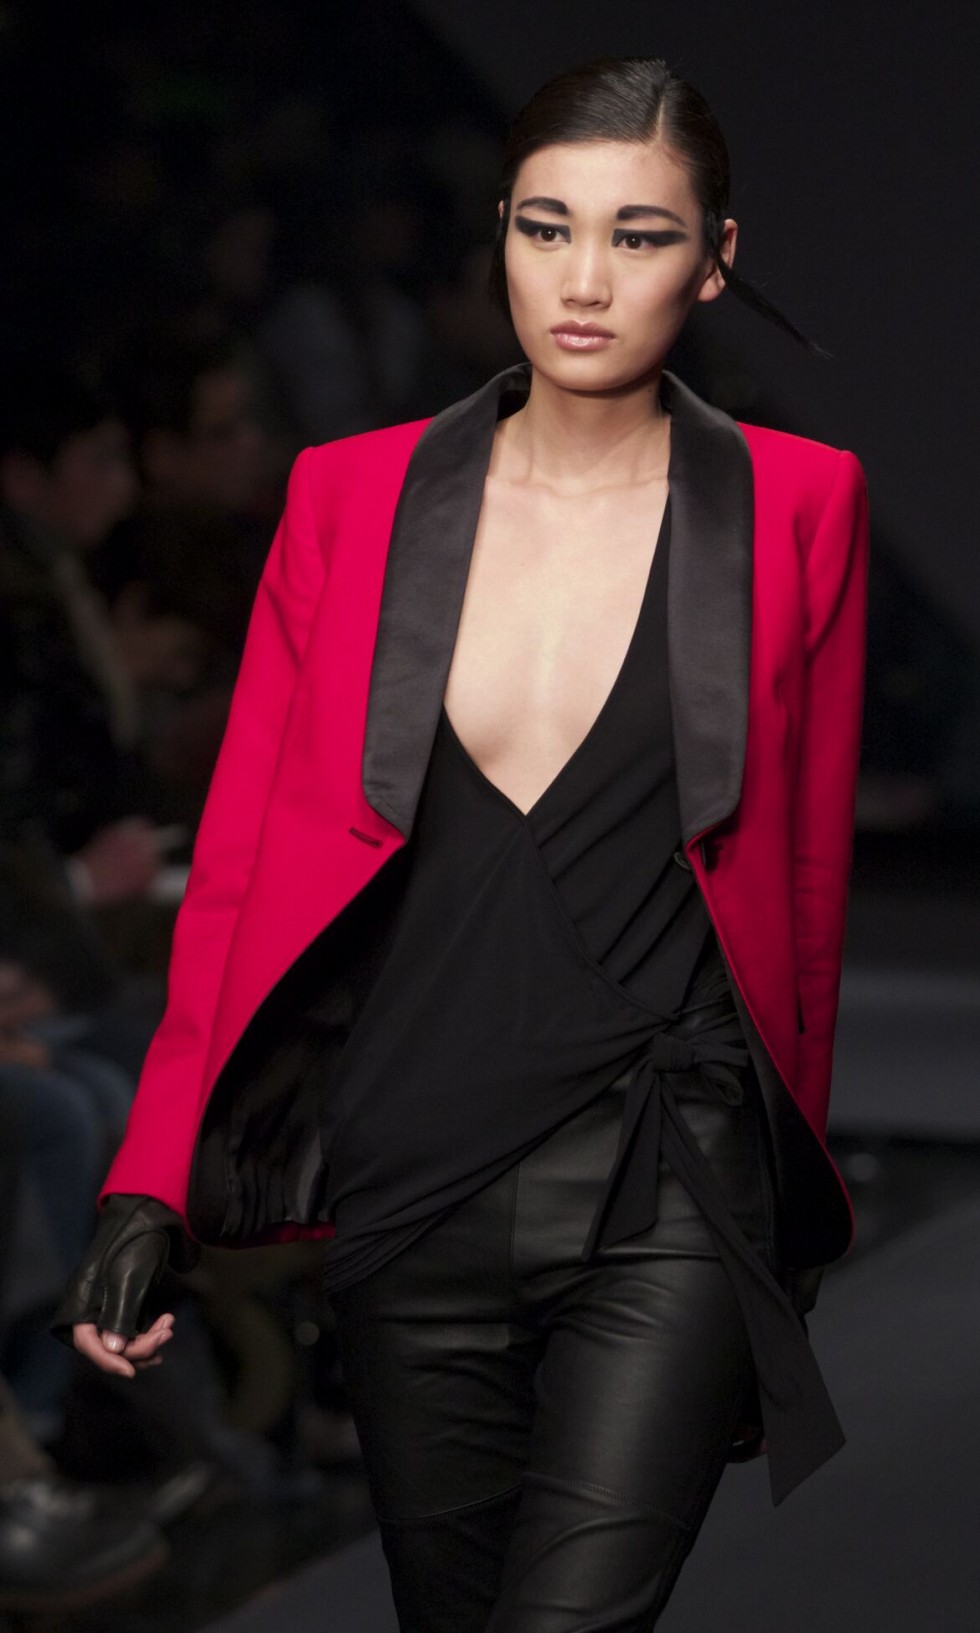 "Milan women's fashion week fall 2014 preview-Krizia Women-Collection-Milan-Fashion-Week"